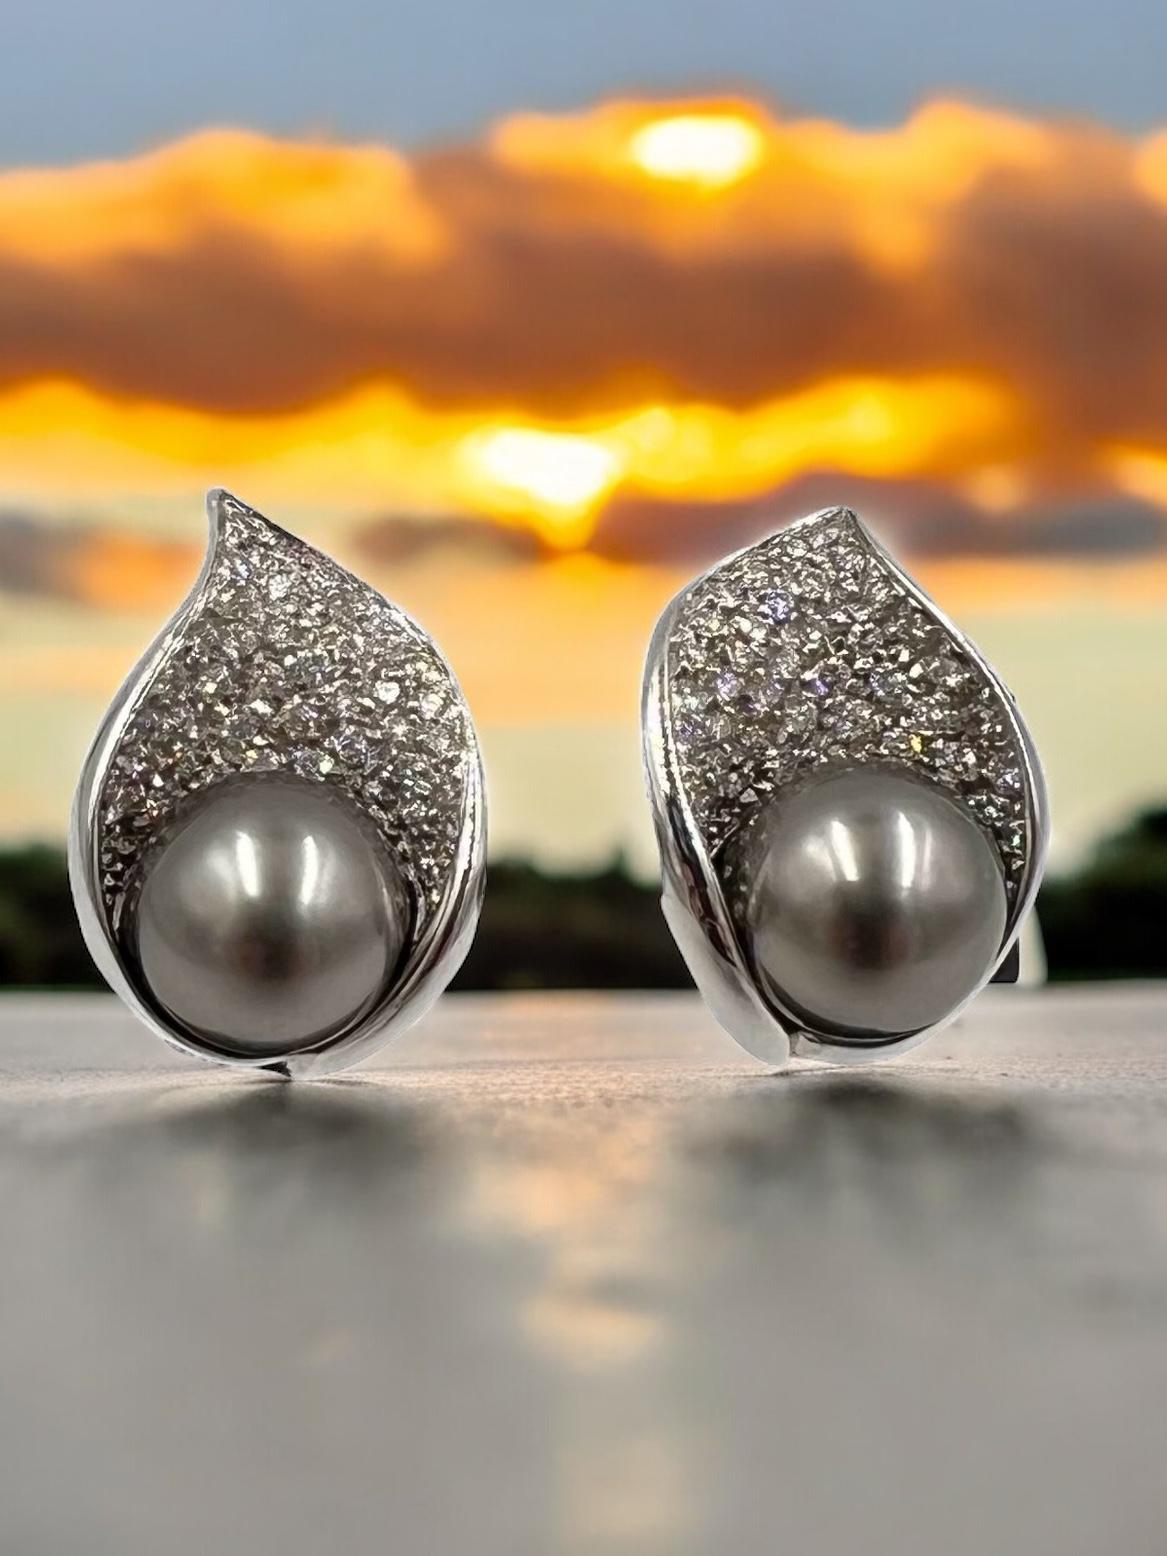 Mastoloni Ohrringe aus Tahiti-Perlen und Diamanten aus Weißgold.

  Diese ungewöhnlichen Mastoloni Ohrringe im Muschel-Design sind mit je einer Tahiti-Perle verziert.  Alle sind aus 18 Karat Weißgold gefertigt.  Die silbergrau schimmernden 9 mm